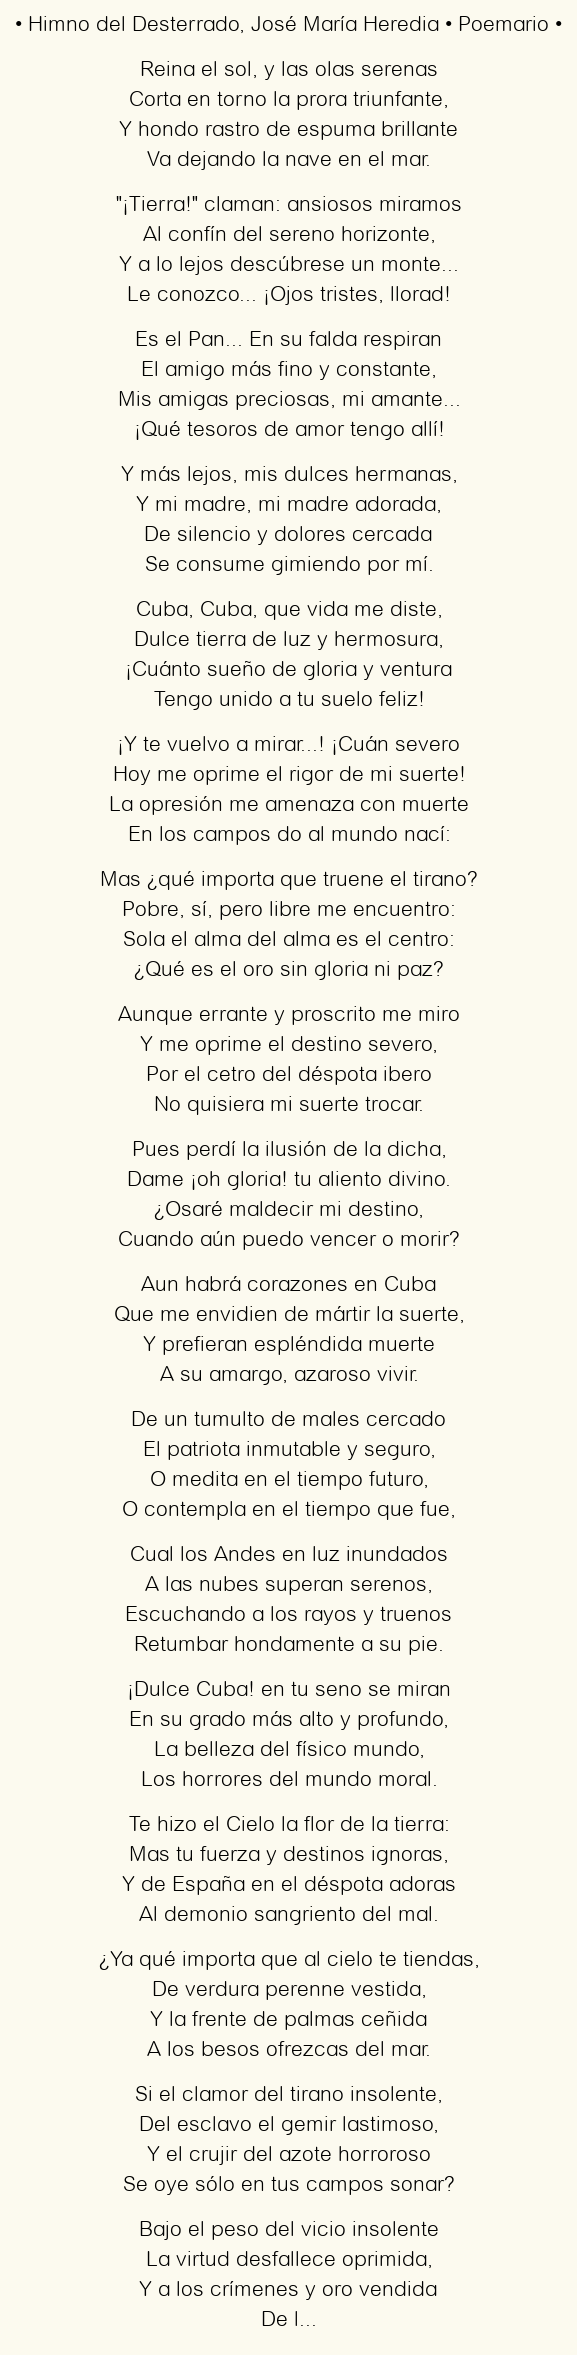 Imagen con el poema Himno del Desterrado, por José María Heredia